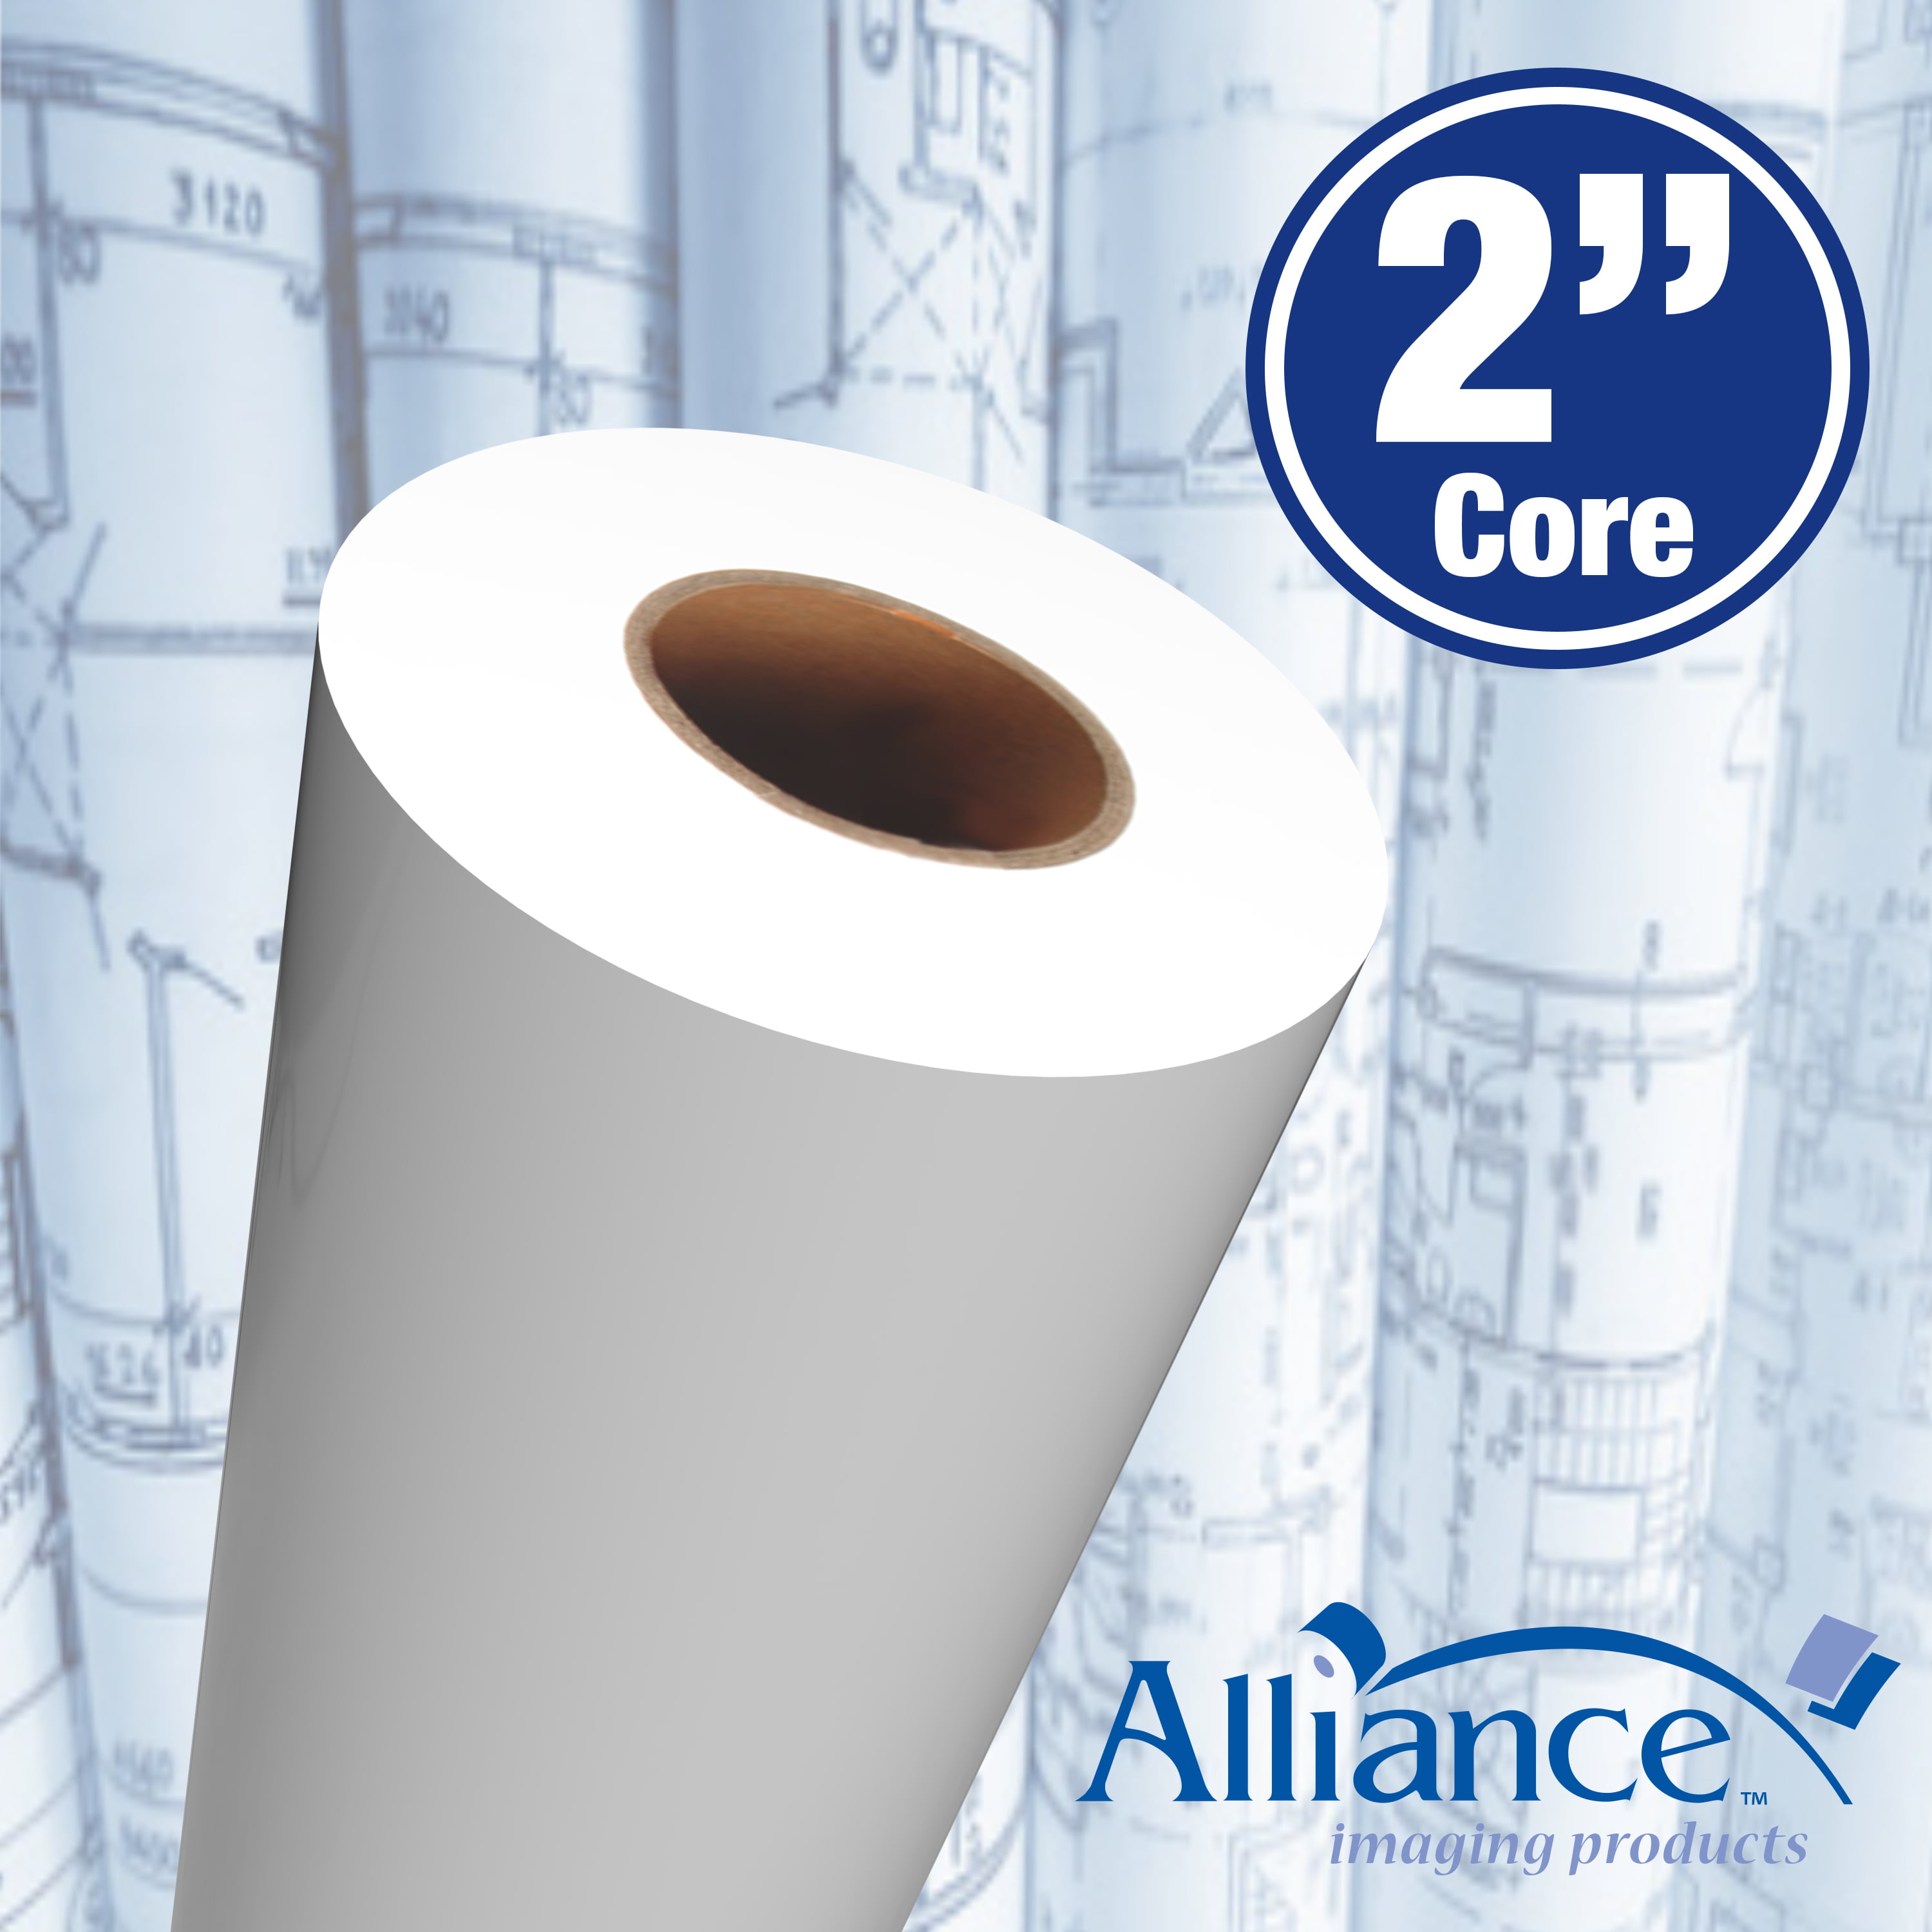 4 Rls/Ct w/ 2" Core 20lb Alliance Wide Format Paper 42"x150’ Rolls 92 Bright 